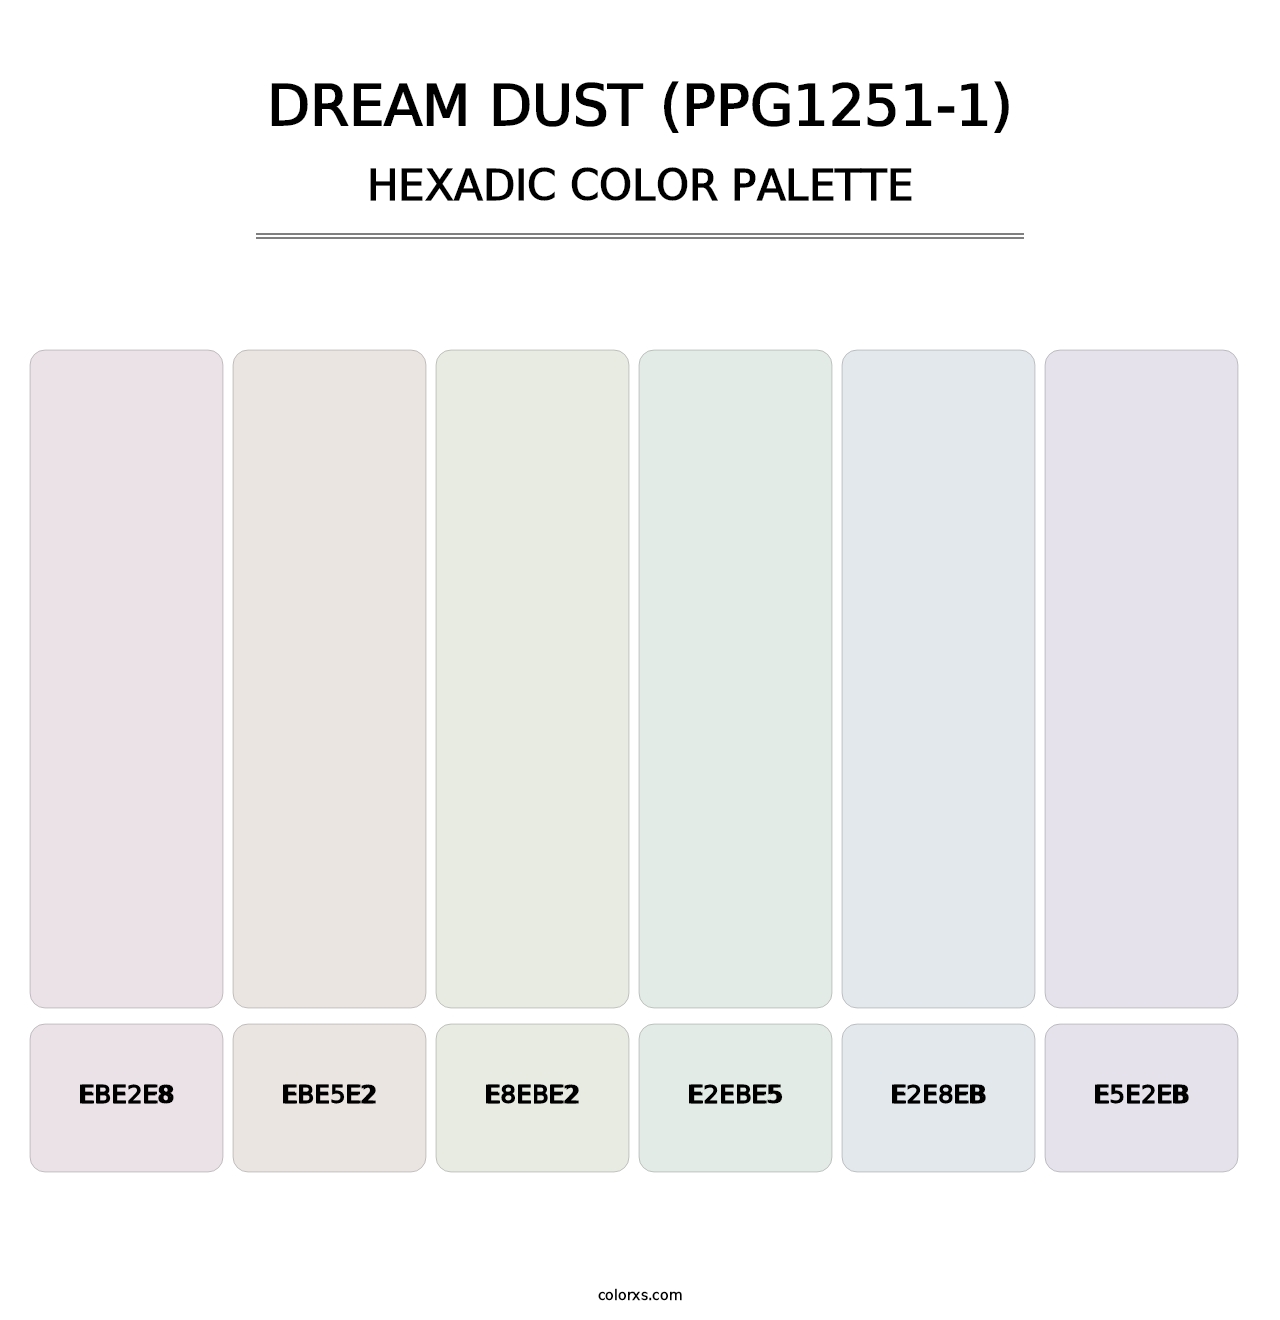 Dream Dust (PPG1251-1) - Hexadic Color Palette